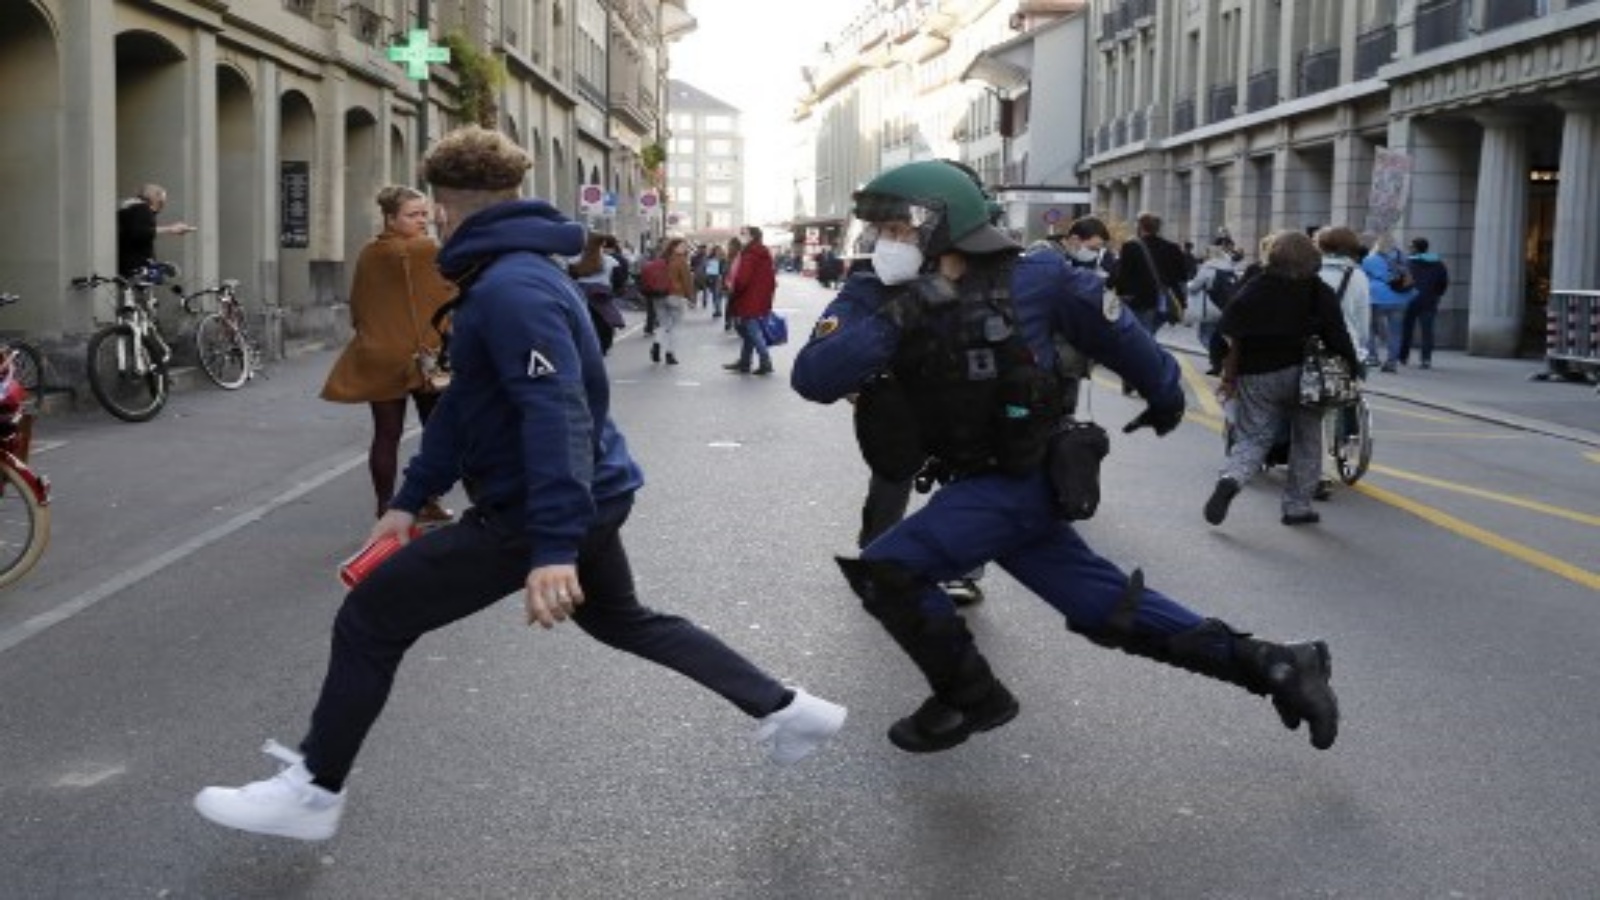 ضابط شرطة يطارد متظاهرًا خلال مظاهرة في برن في 31 أكتوبر 2020 ، احتجاجًا على الإجراءات الجديدة التي اتخذتها السلطات السويسرية لكبح حالات الإصابة بفيروس كورونا في البلاد.